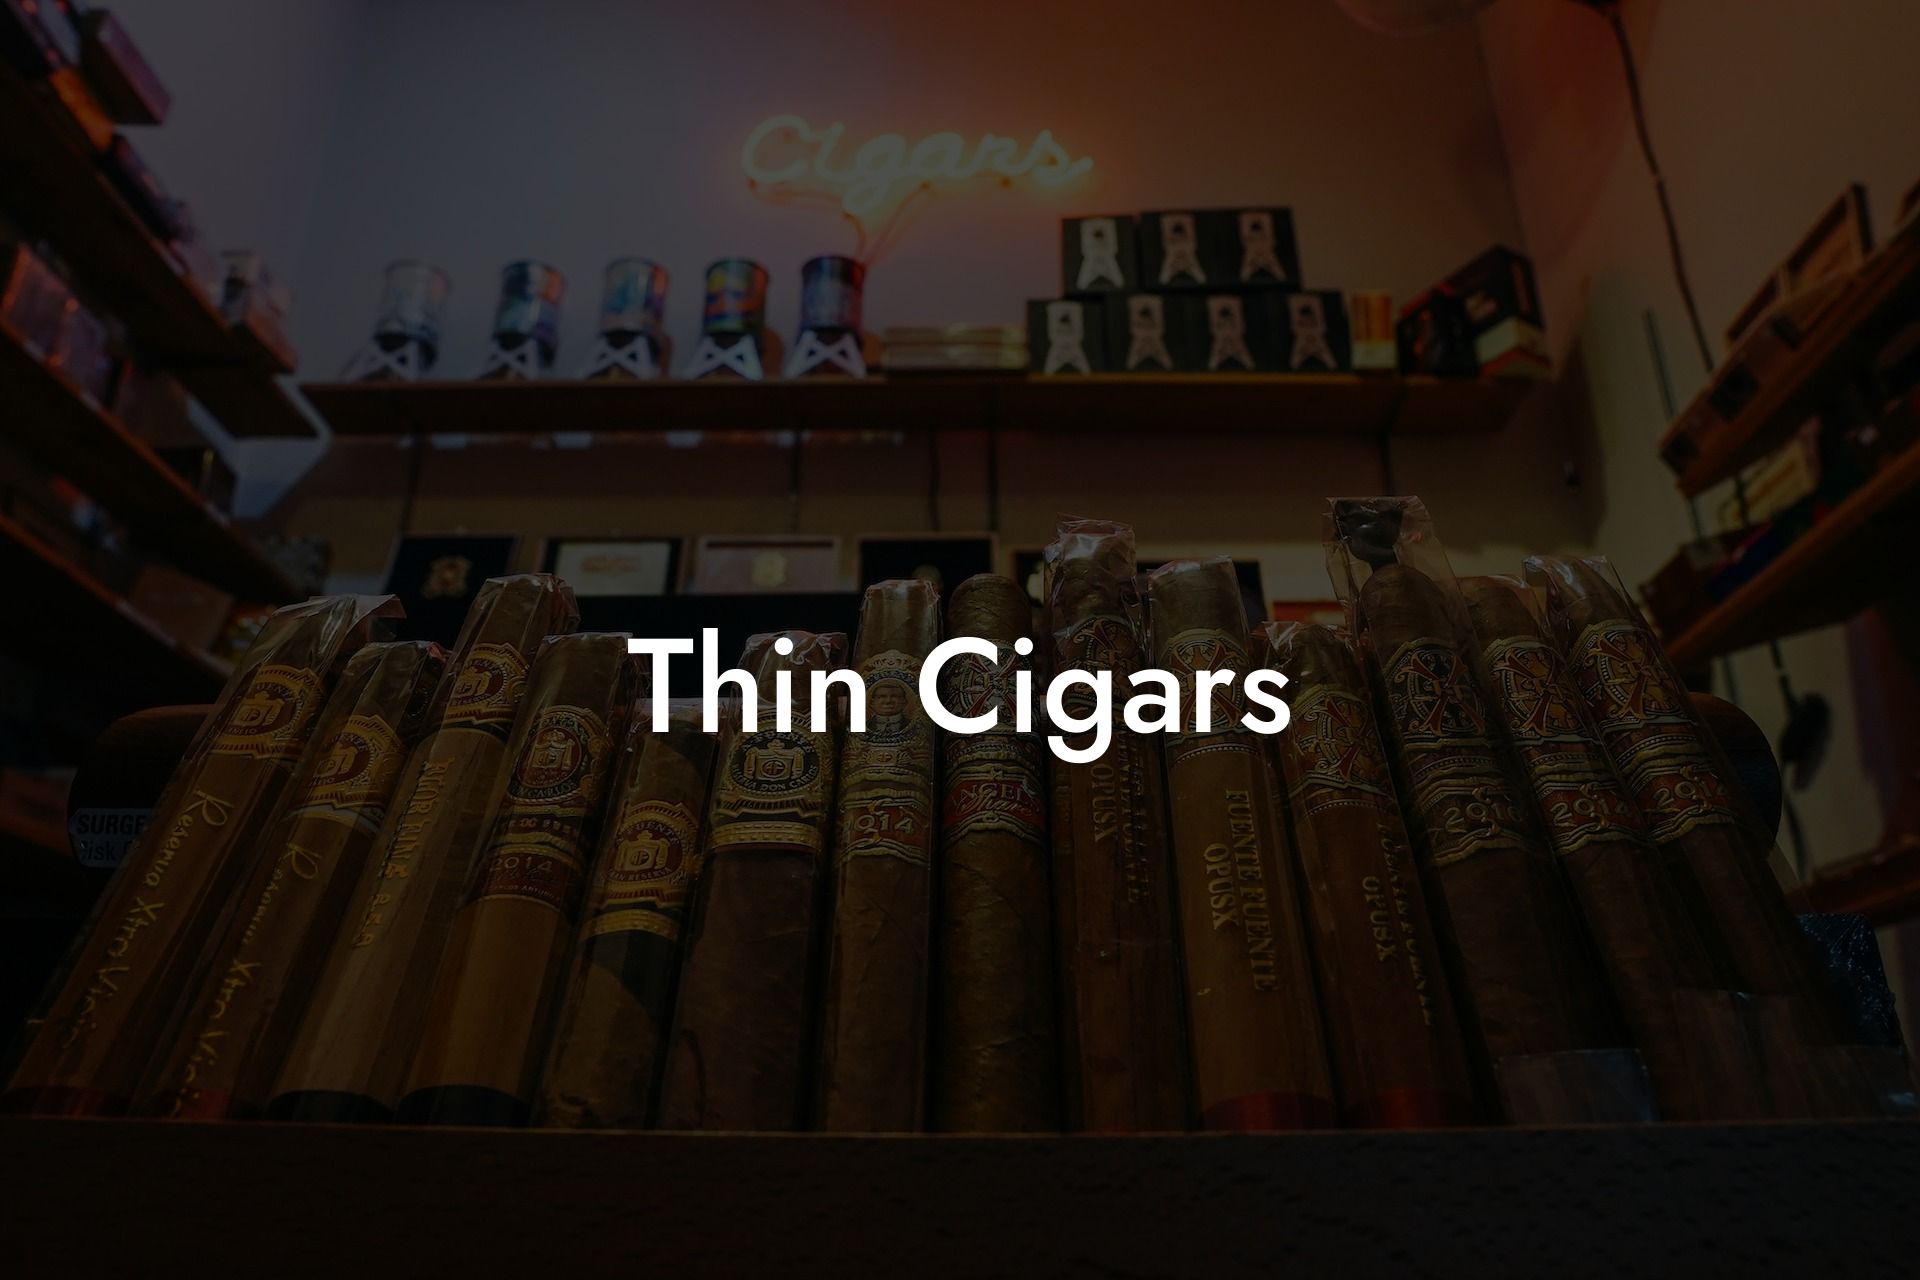 Thin Cigars